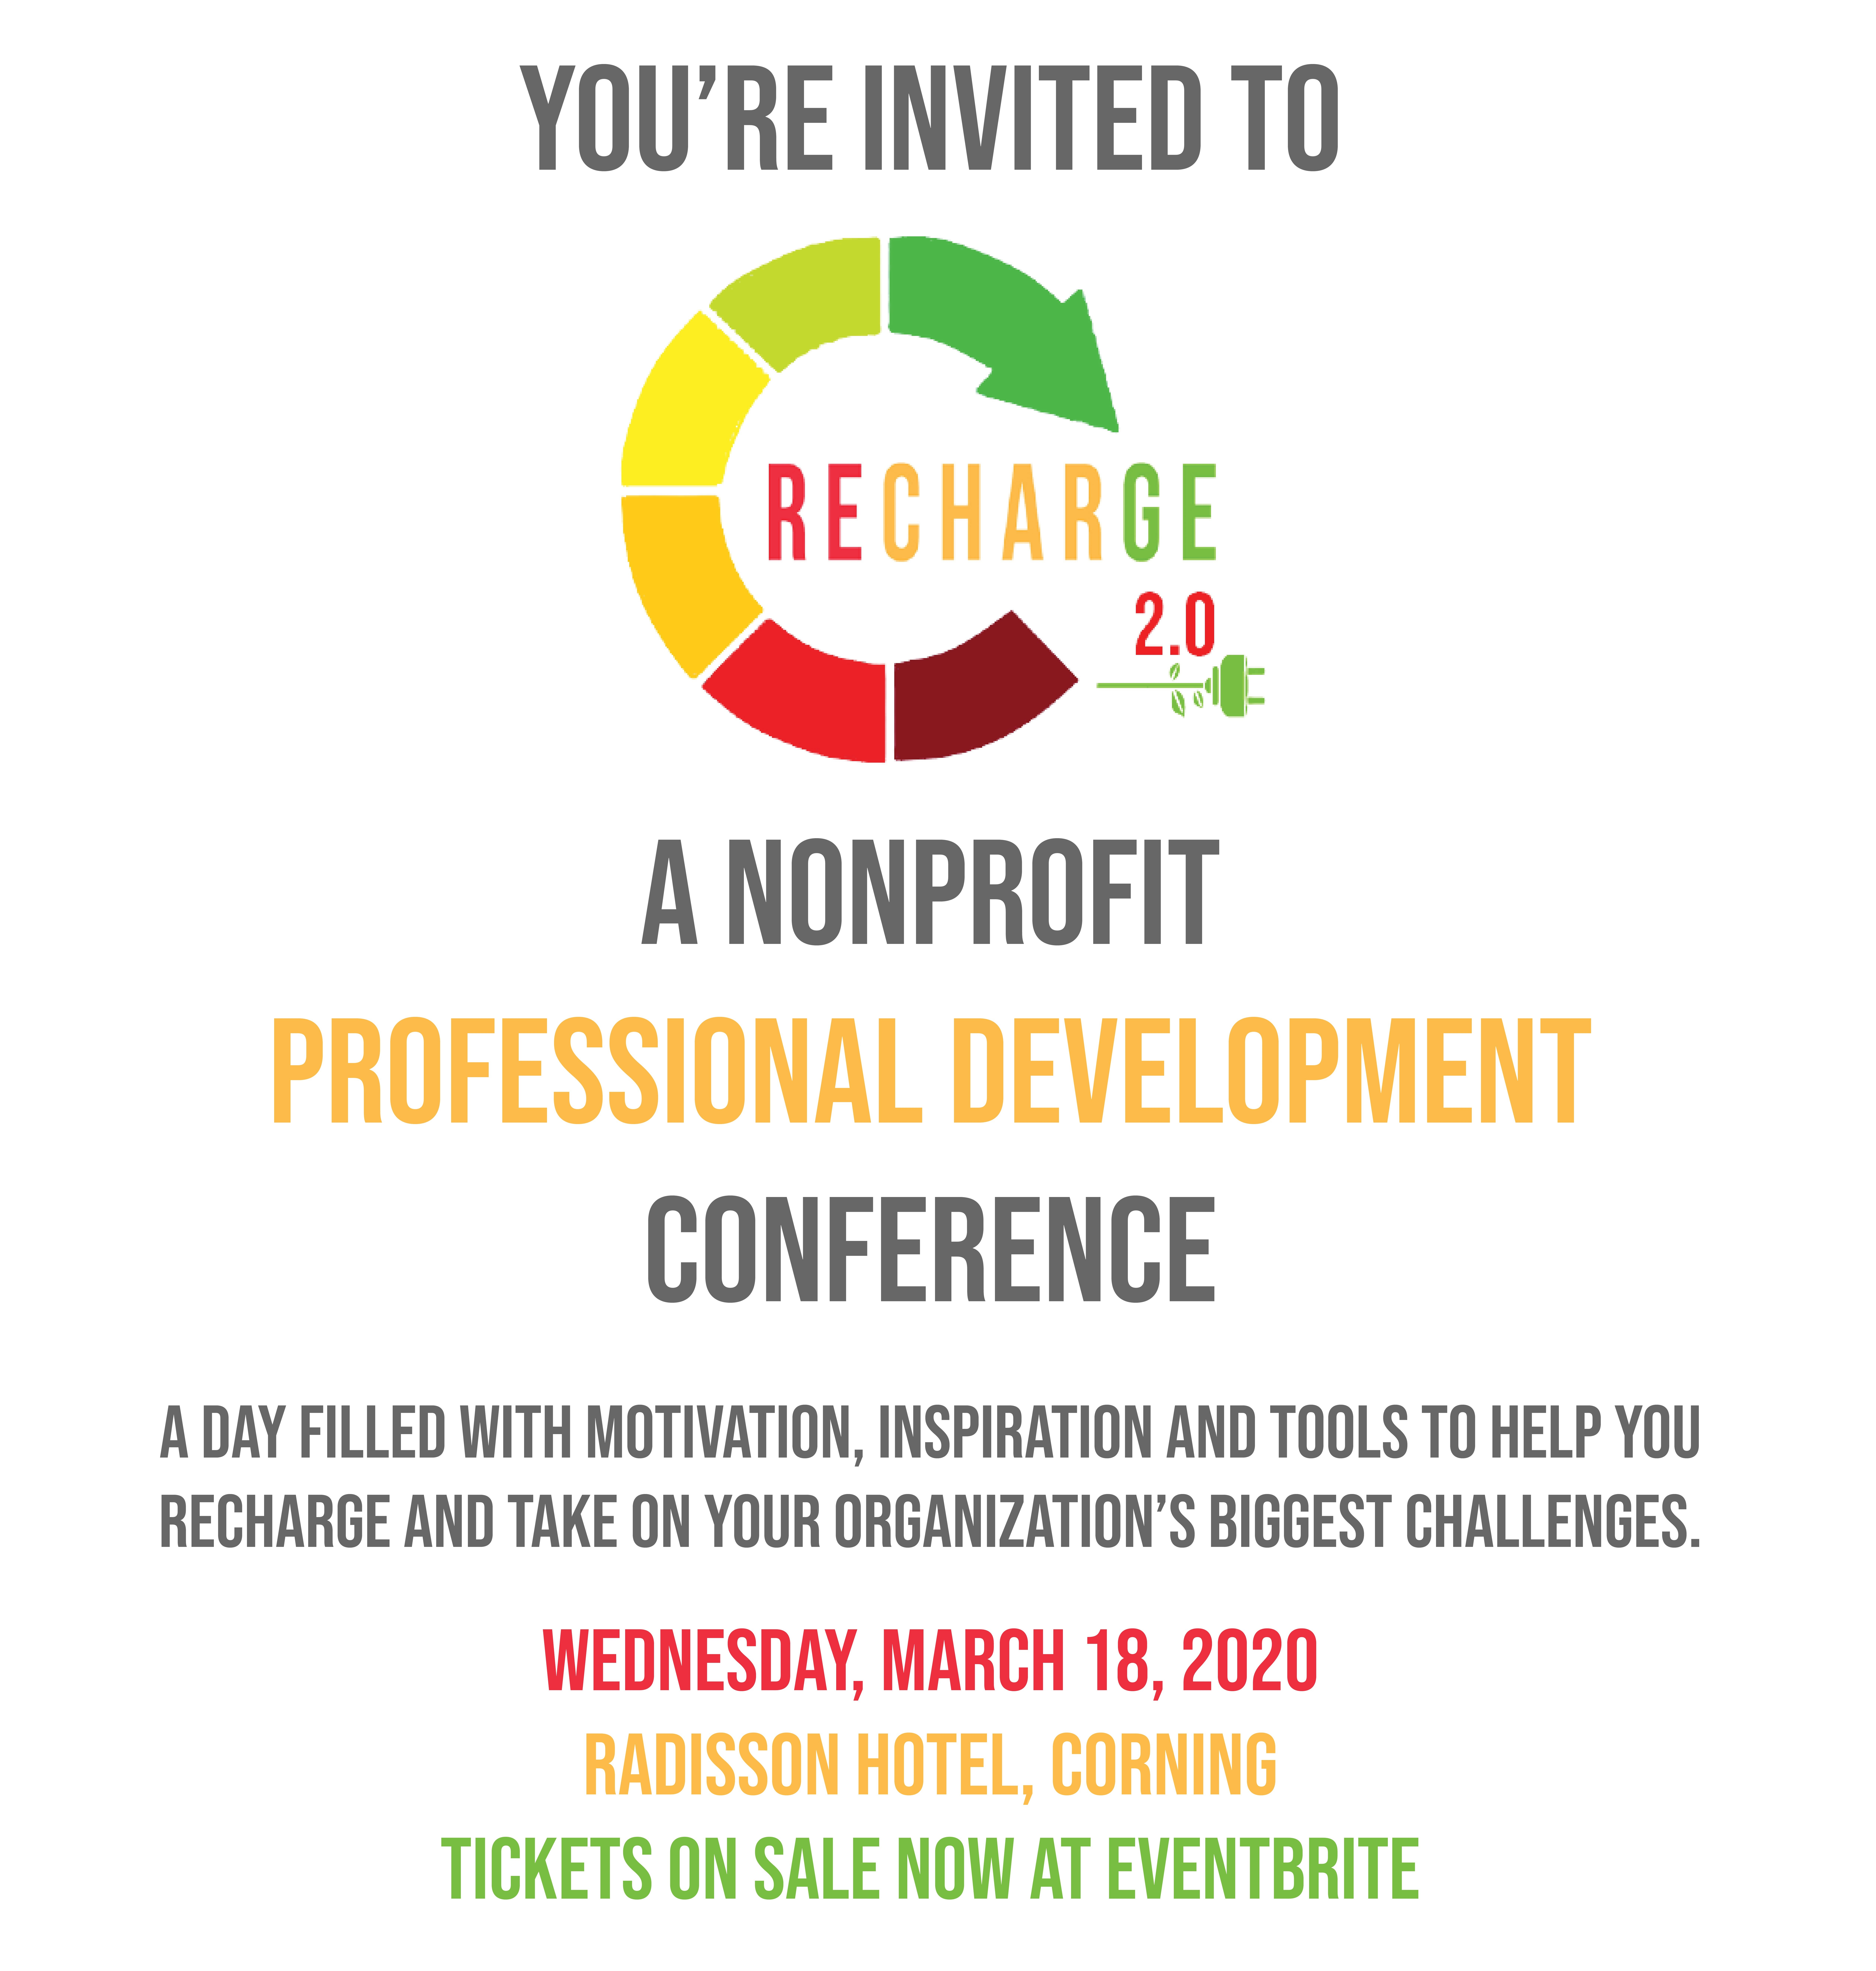 Confrerence Event Invite - Confrerence Event Invite